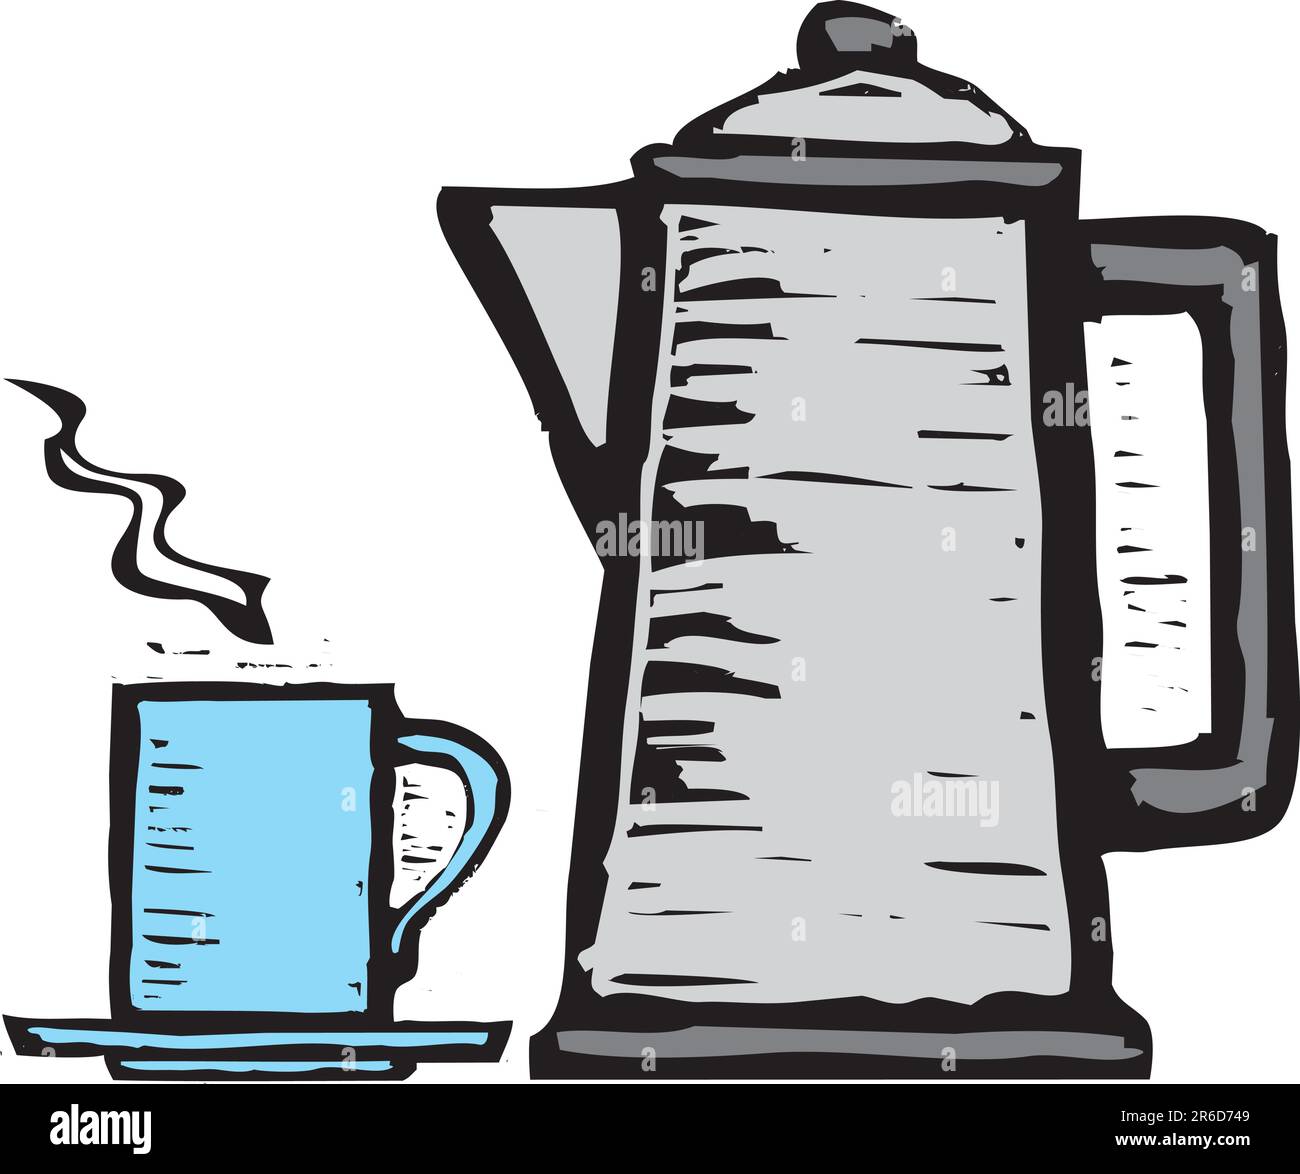 Silografia ruvida stile di stile occidentale POT del caffè e la tazza. Illustrazione Vettoriale